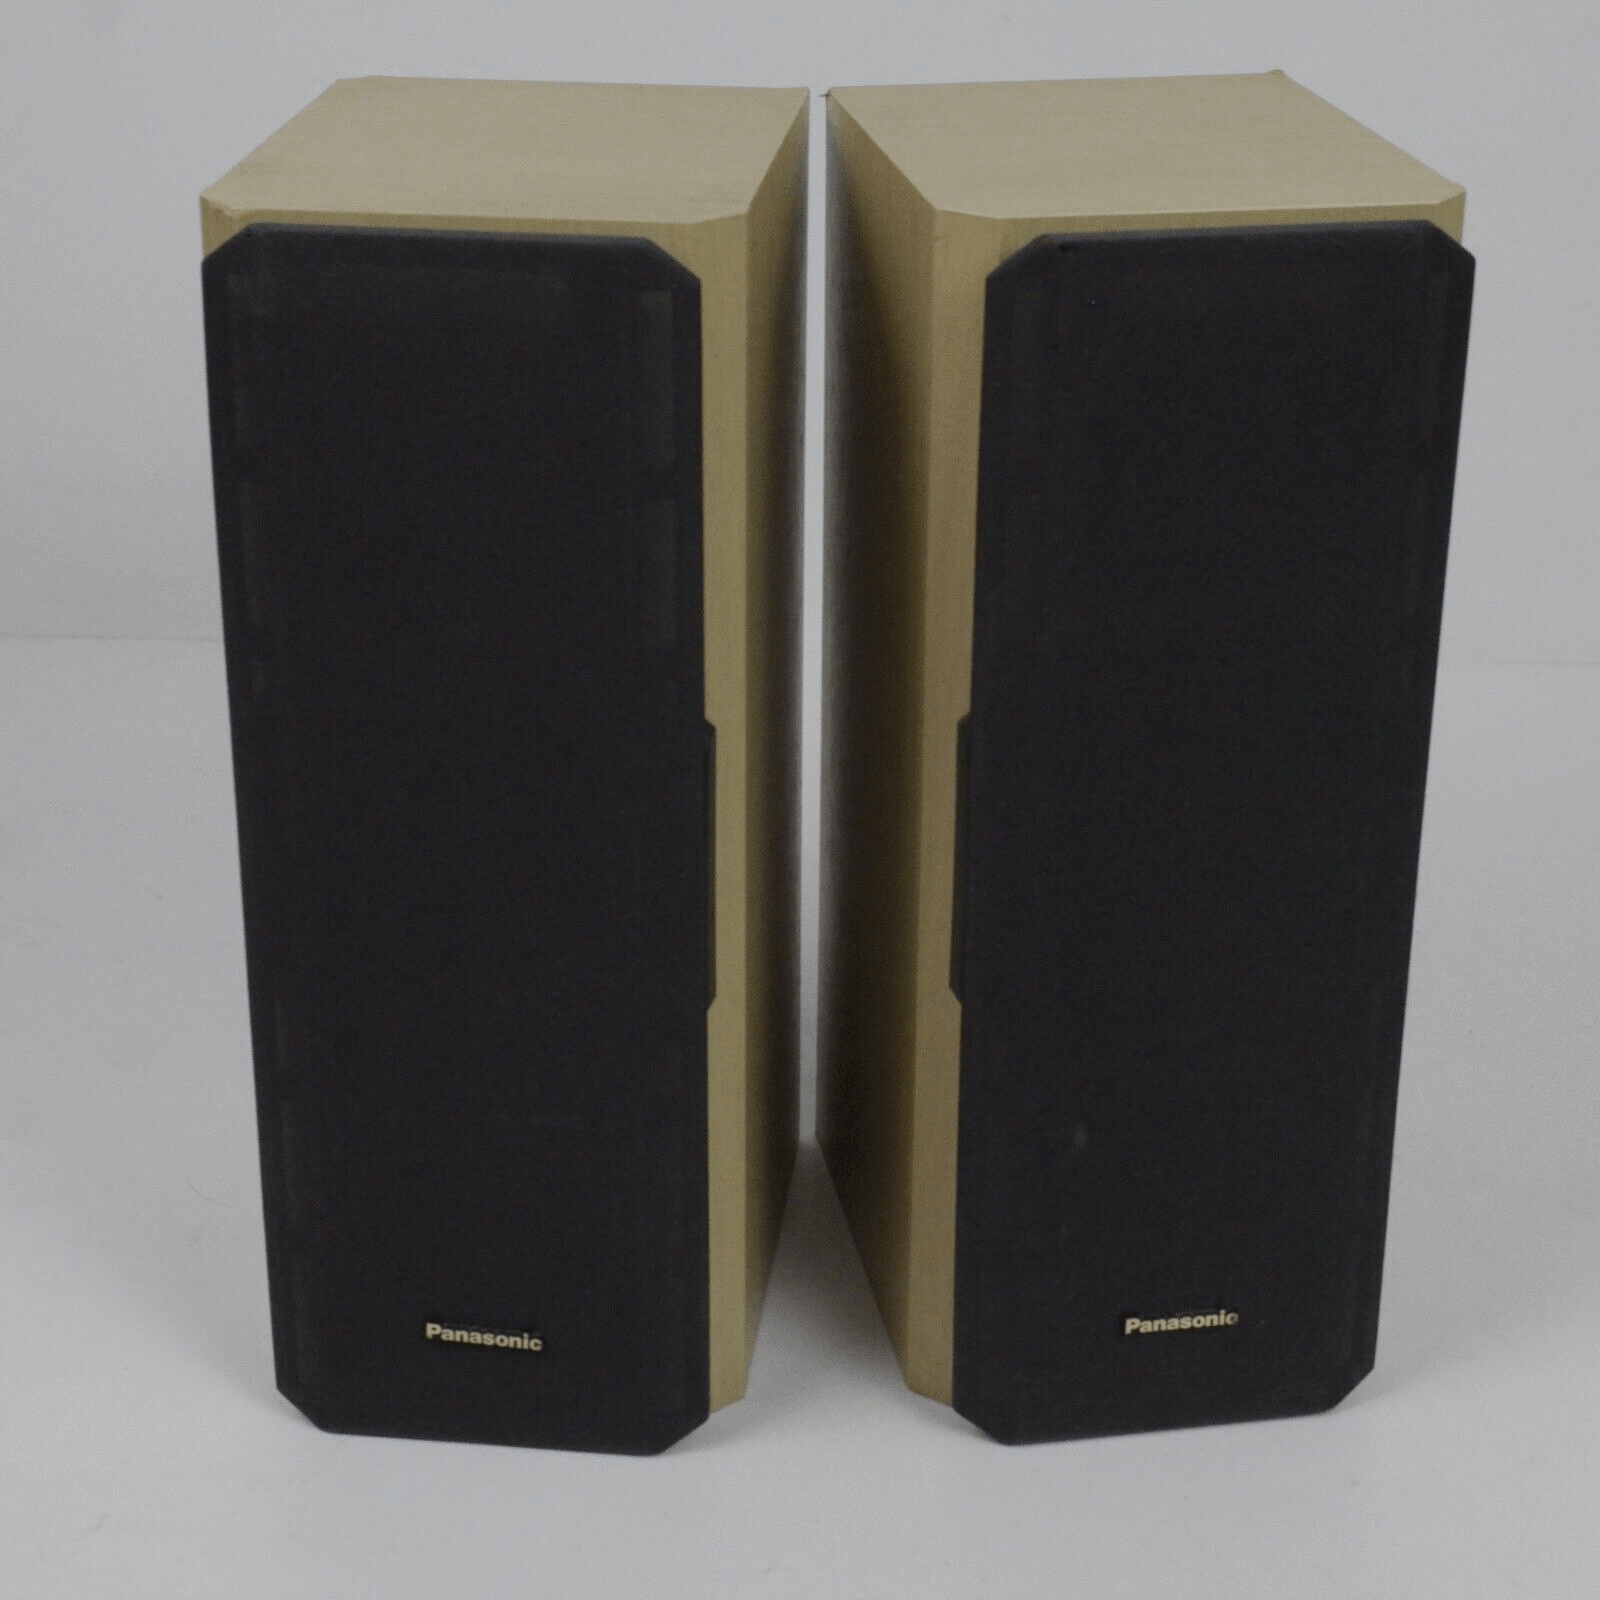 Panasonic SB-AFC20 Simulated Wood Grain Bookshelf Speaker 2pc Set